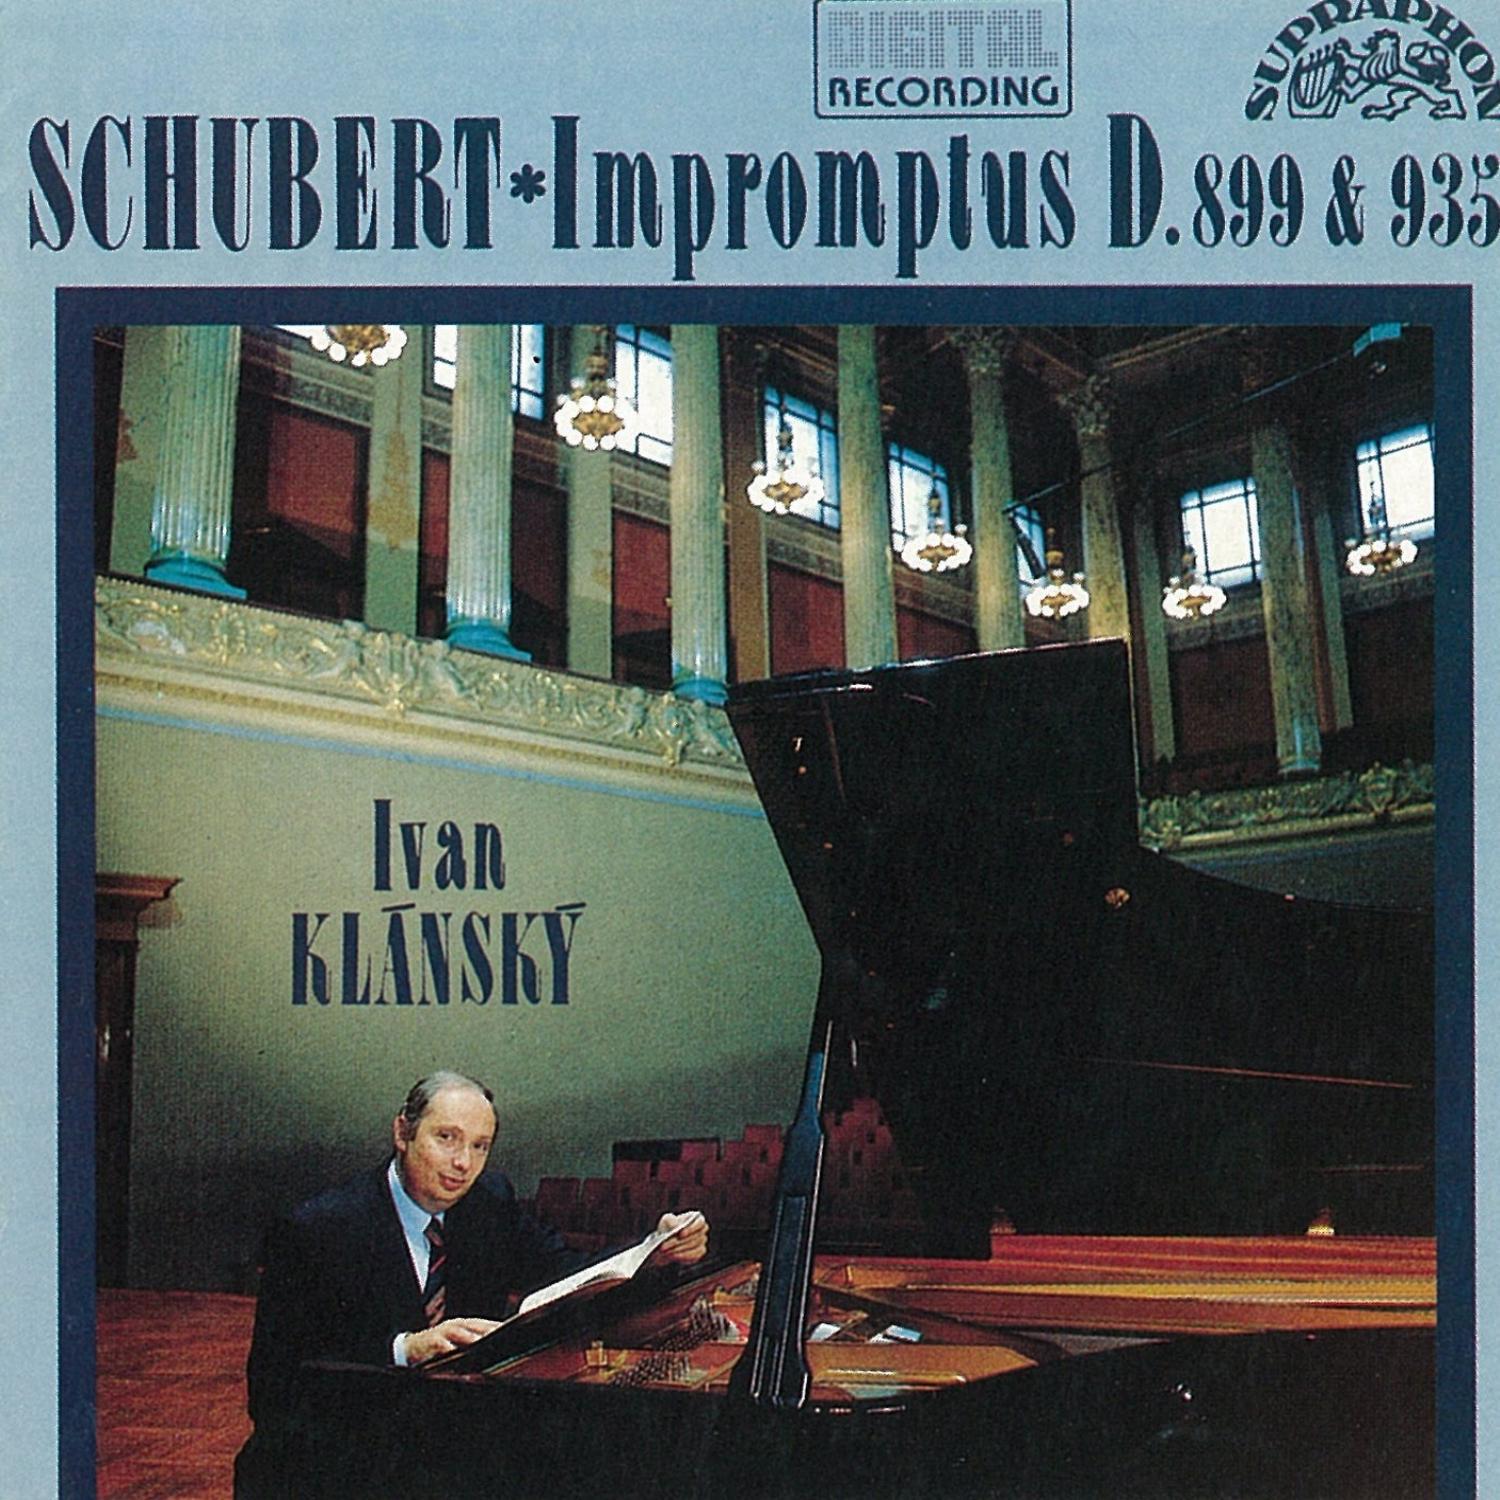 Schubert: Impromptus D. 899 & 935